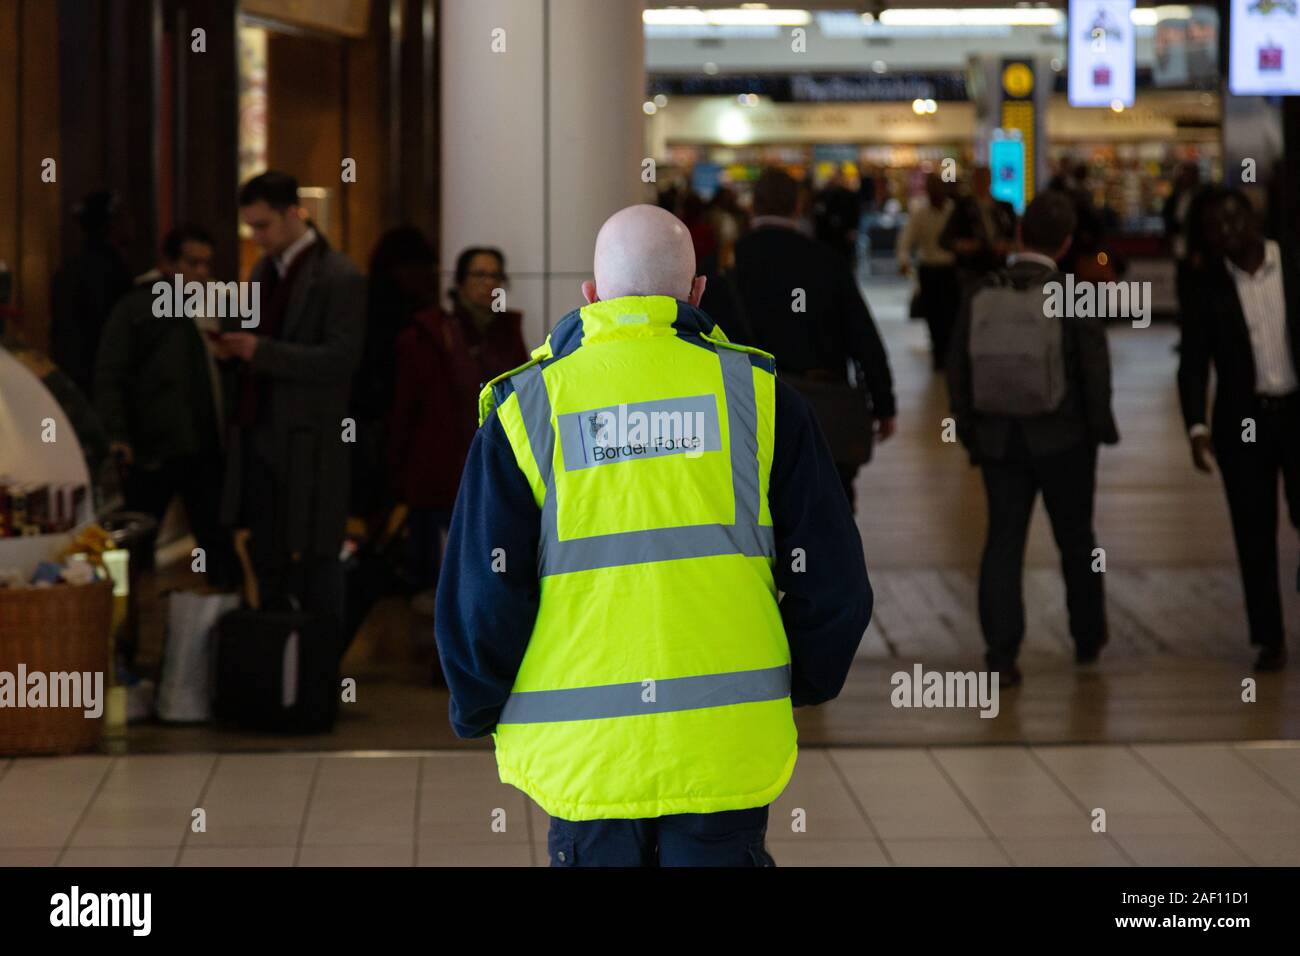 Britischer Grenzkontrollbeamter; britisches Grenzschutzpersonal, das in T3, Flughafen Heathrow, Rückansicht, Flughafen London, Großbritannien arbeitet. Britische Arbeitskraft. Stockfoto